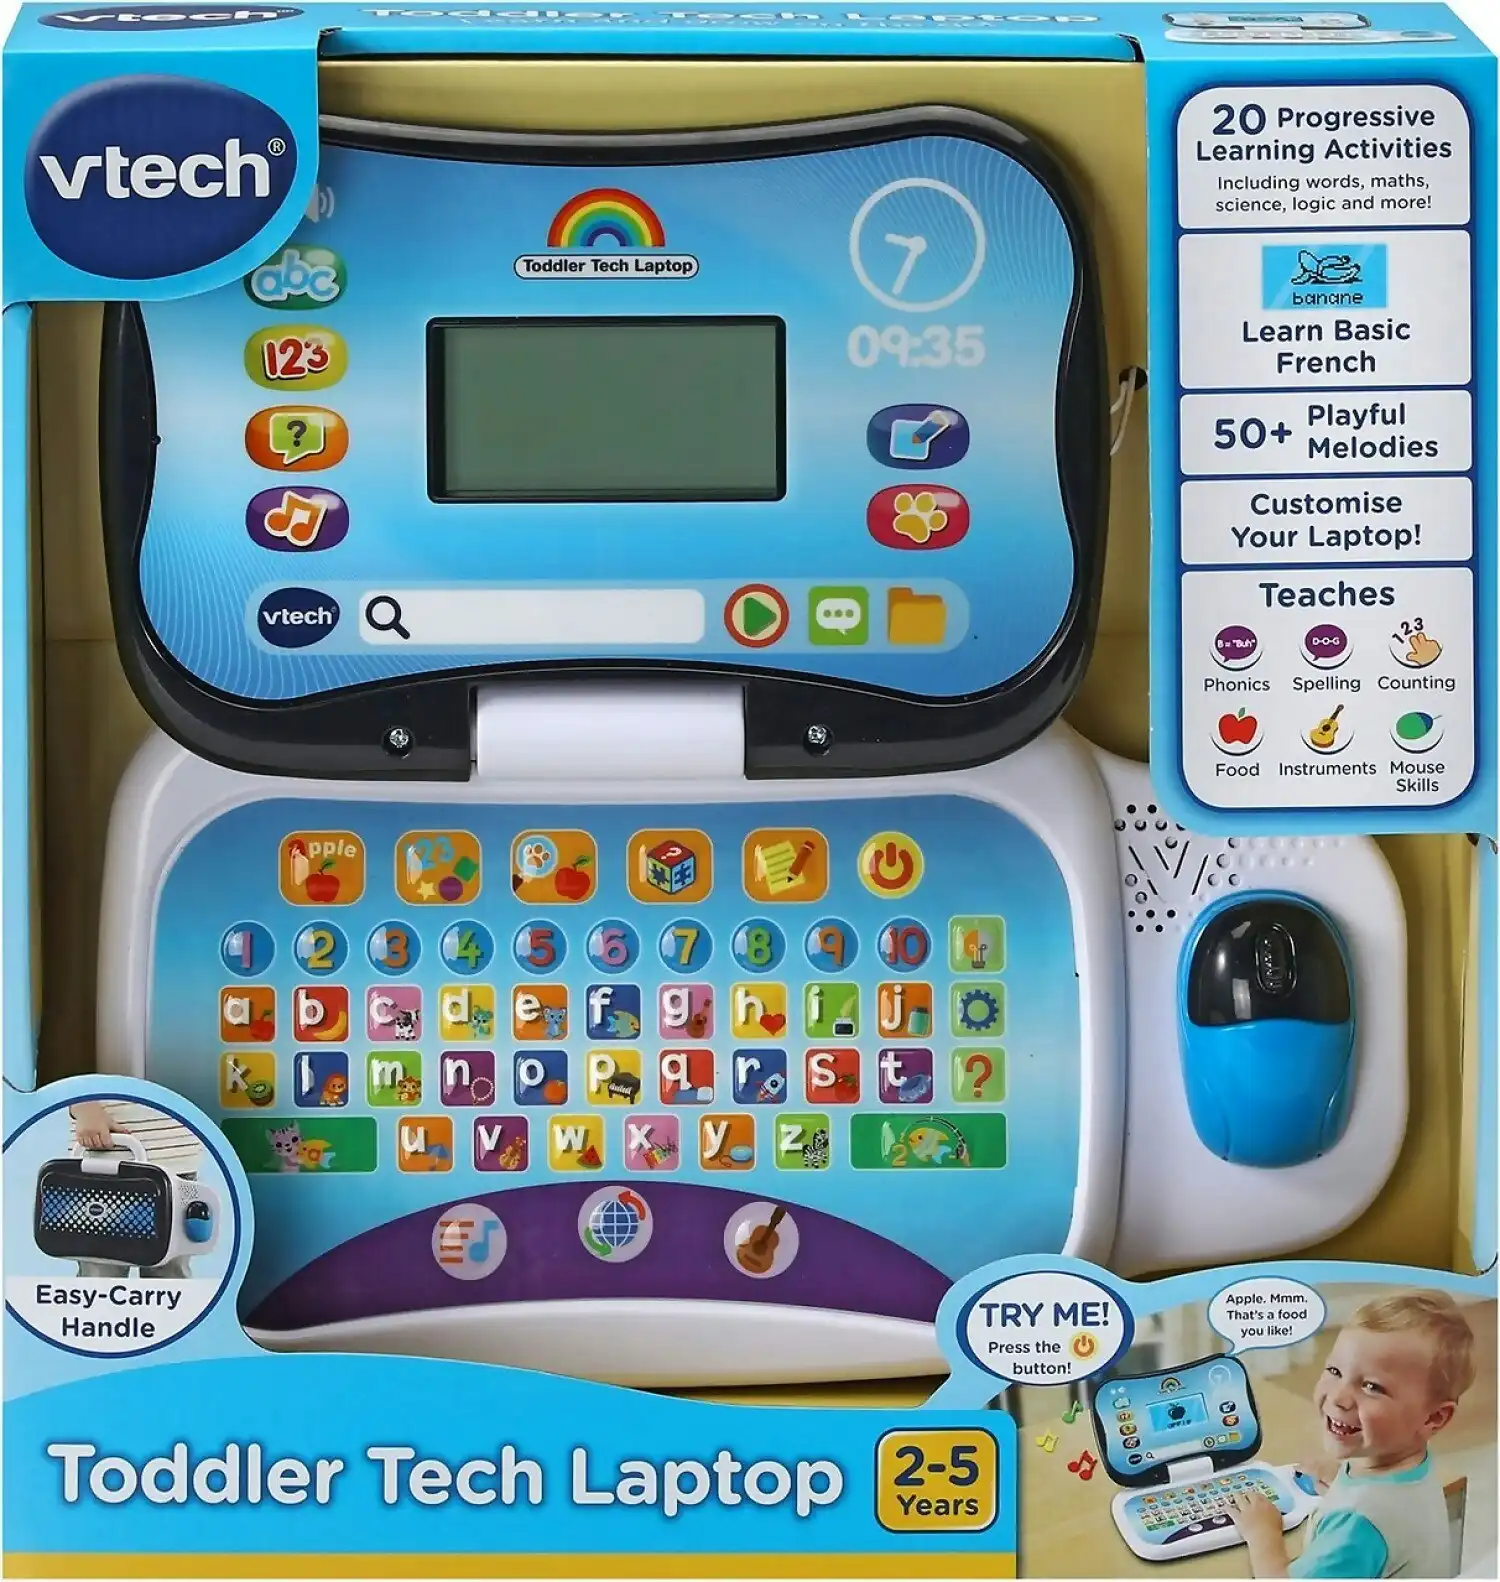 VTech - Toddler Tech Laptop